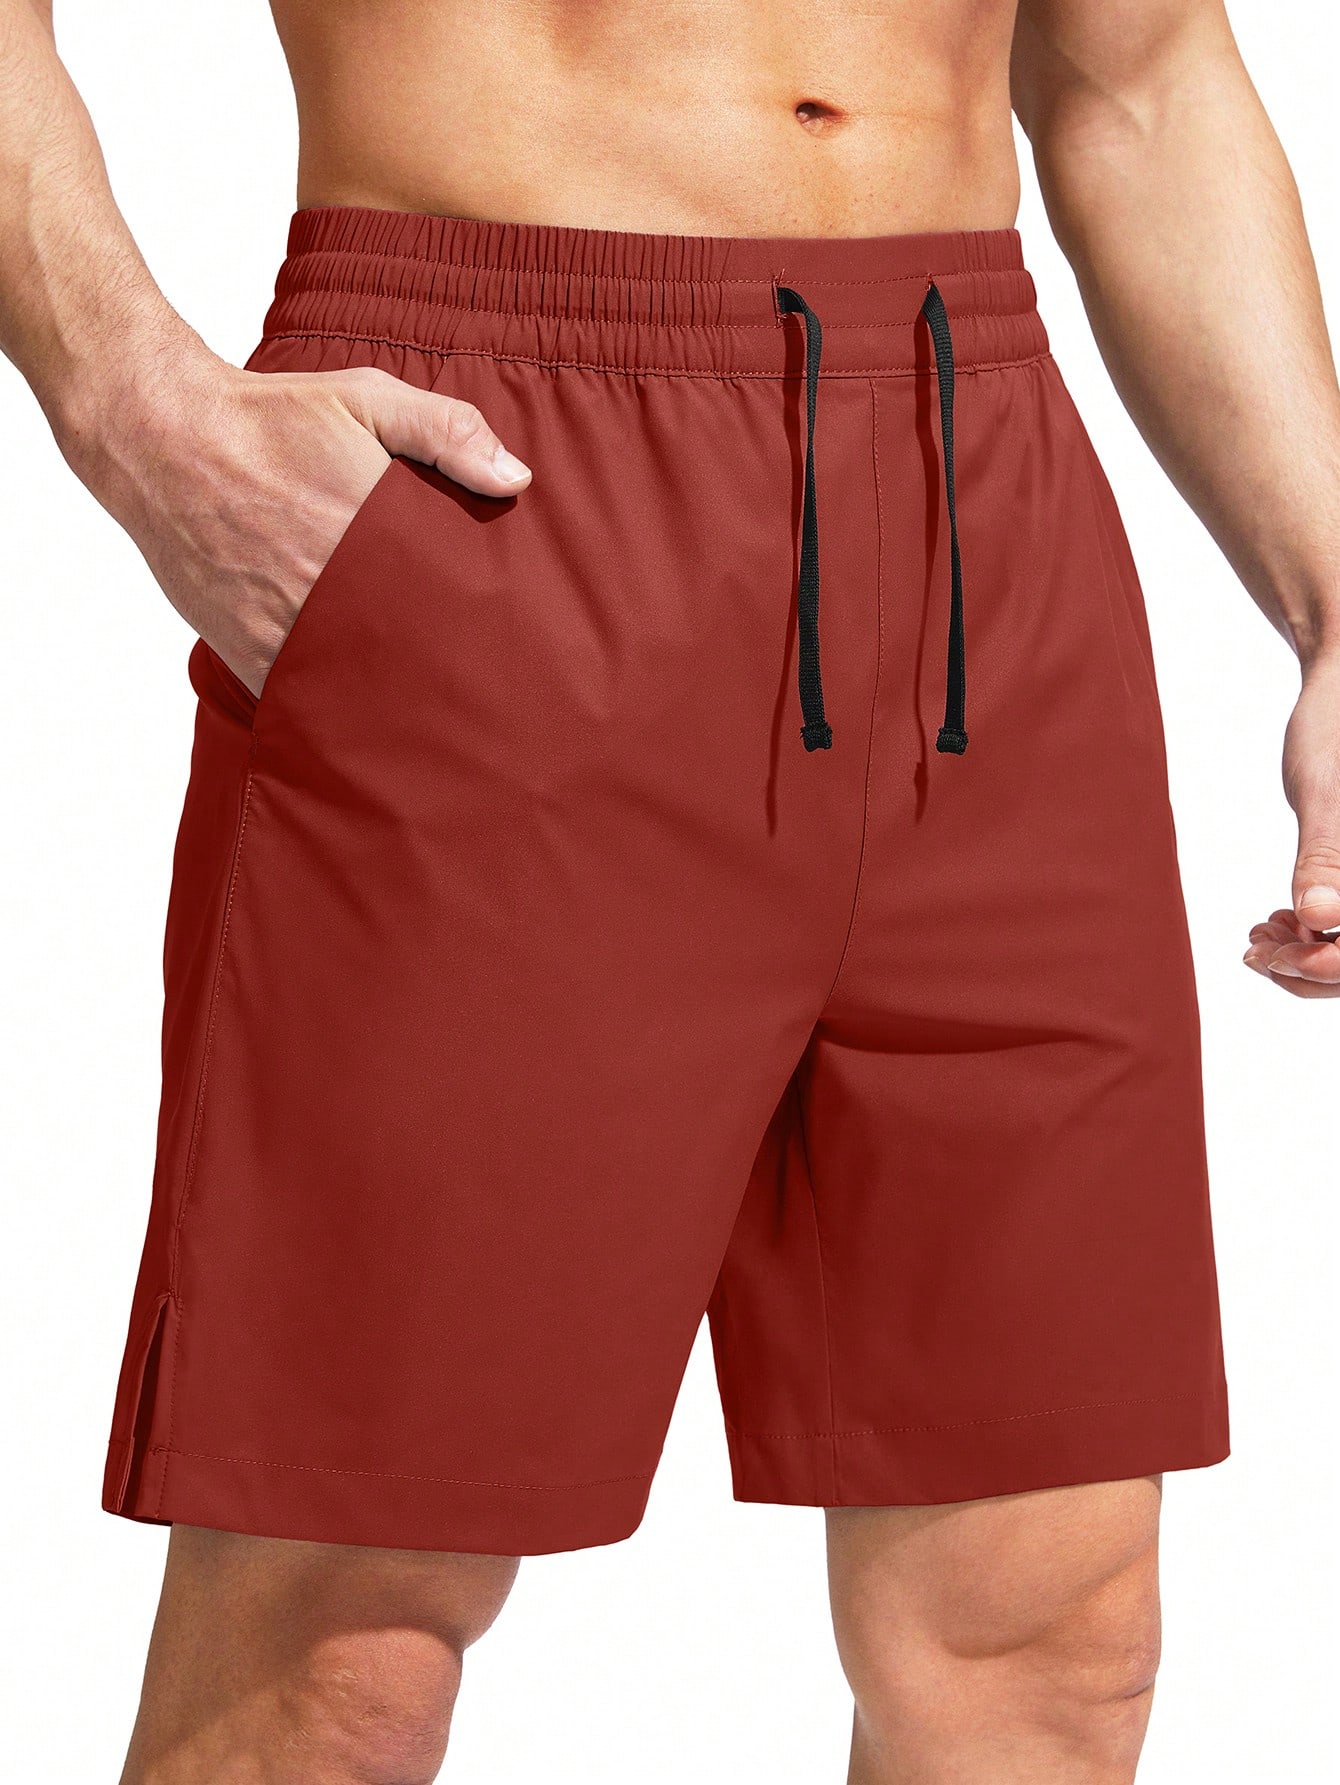 цена G Gradual G Gradual Мужские плавки Быстросохнущий купальный костюм Пляжные шорты для мужчин с карманами на молнии и сетчатой ​​подкладкой Серые шорты, красный